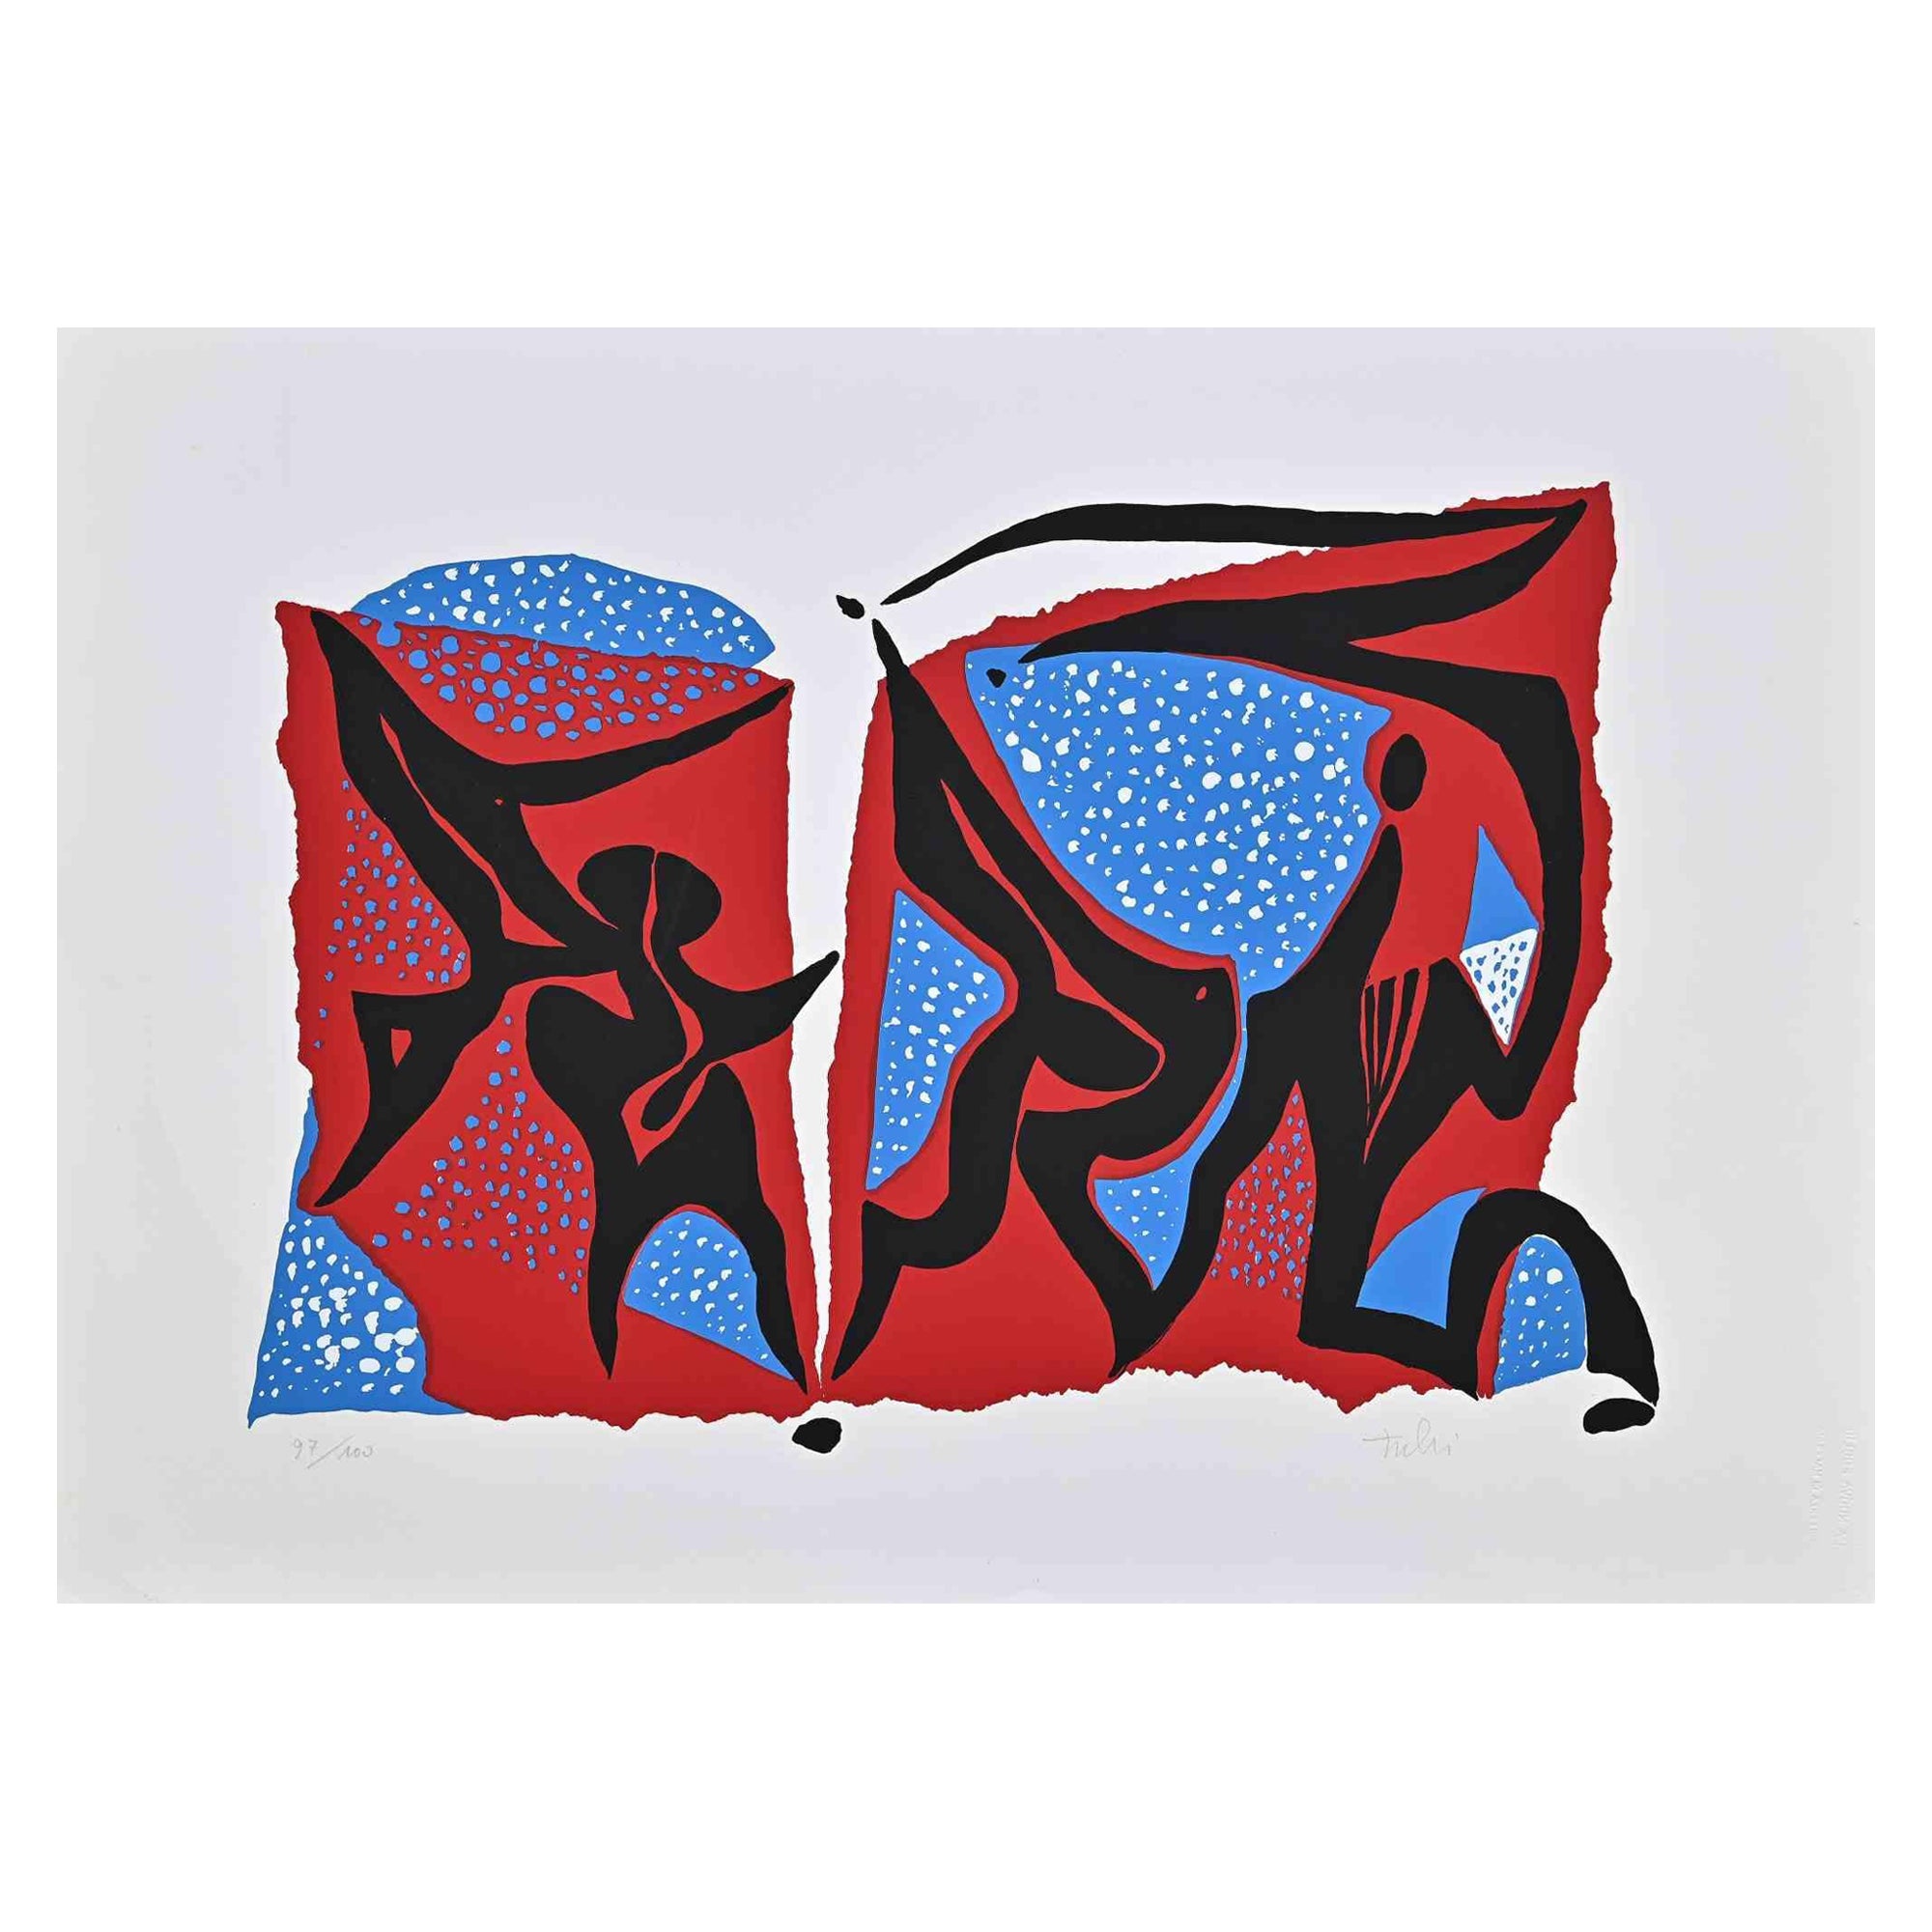 Carnivalesque Composition ist ein farbiger Siebdruck auf Papier, der 1973 von dem italienischen Künstler Wladimiro Tulli realisiert wurde.

Rechts unten handsigniert.

Nummerierte Auflage von 97/100.

Ein schönes Kunstwerk, das eine abstrakte